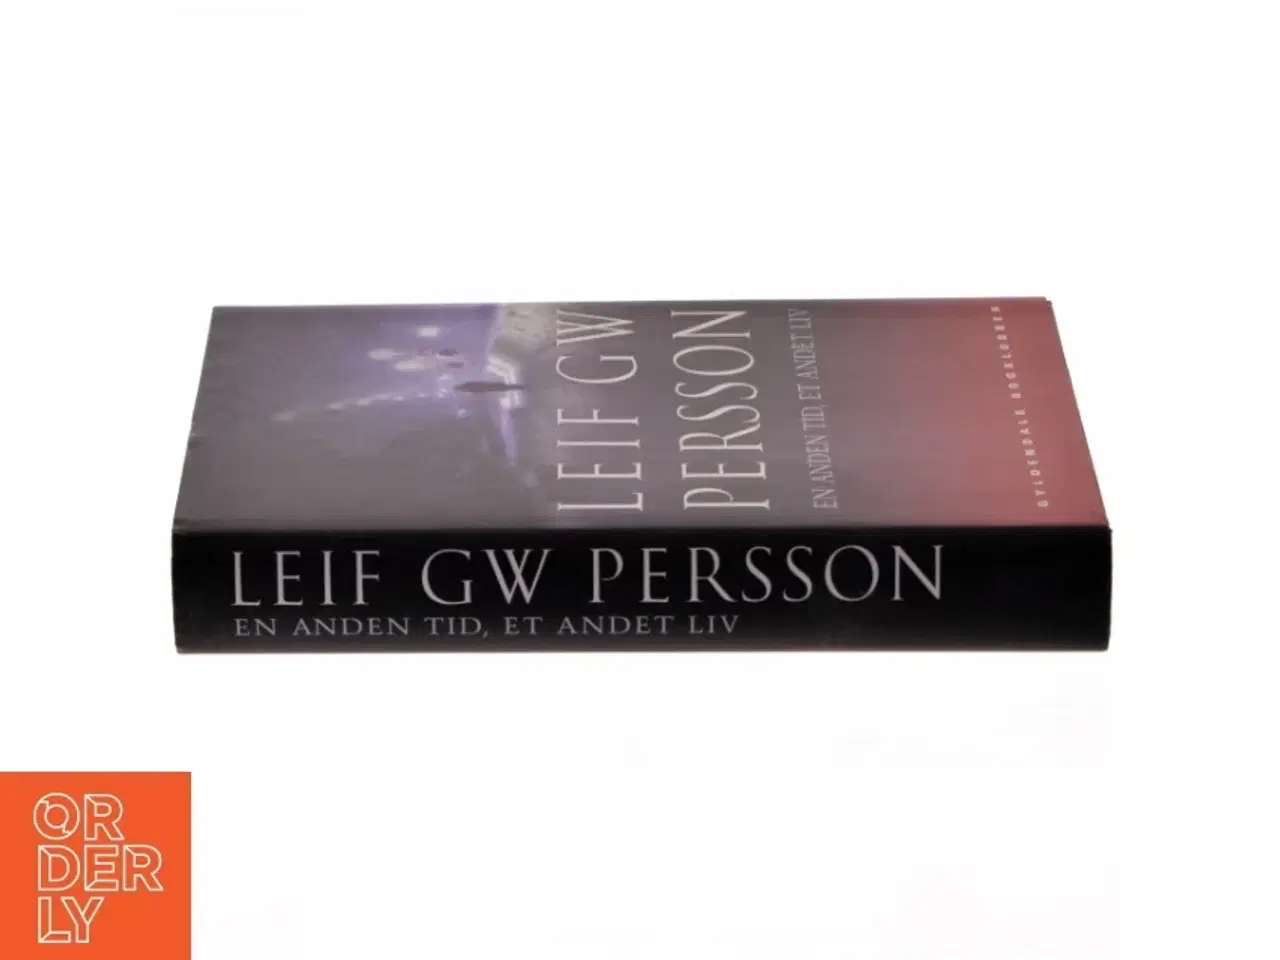 Billede 2 - En anden tid, et andet liv : en roman om en forbrydelse af Leif G. W. Persson (Bog)